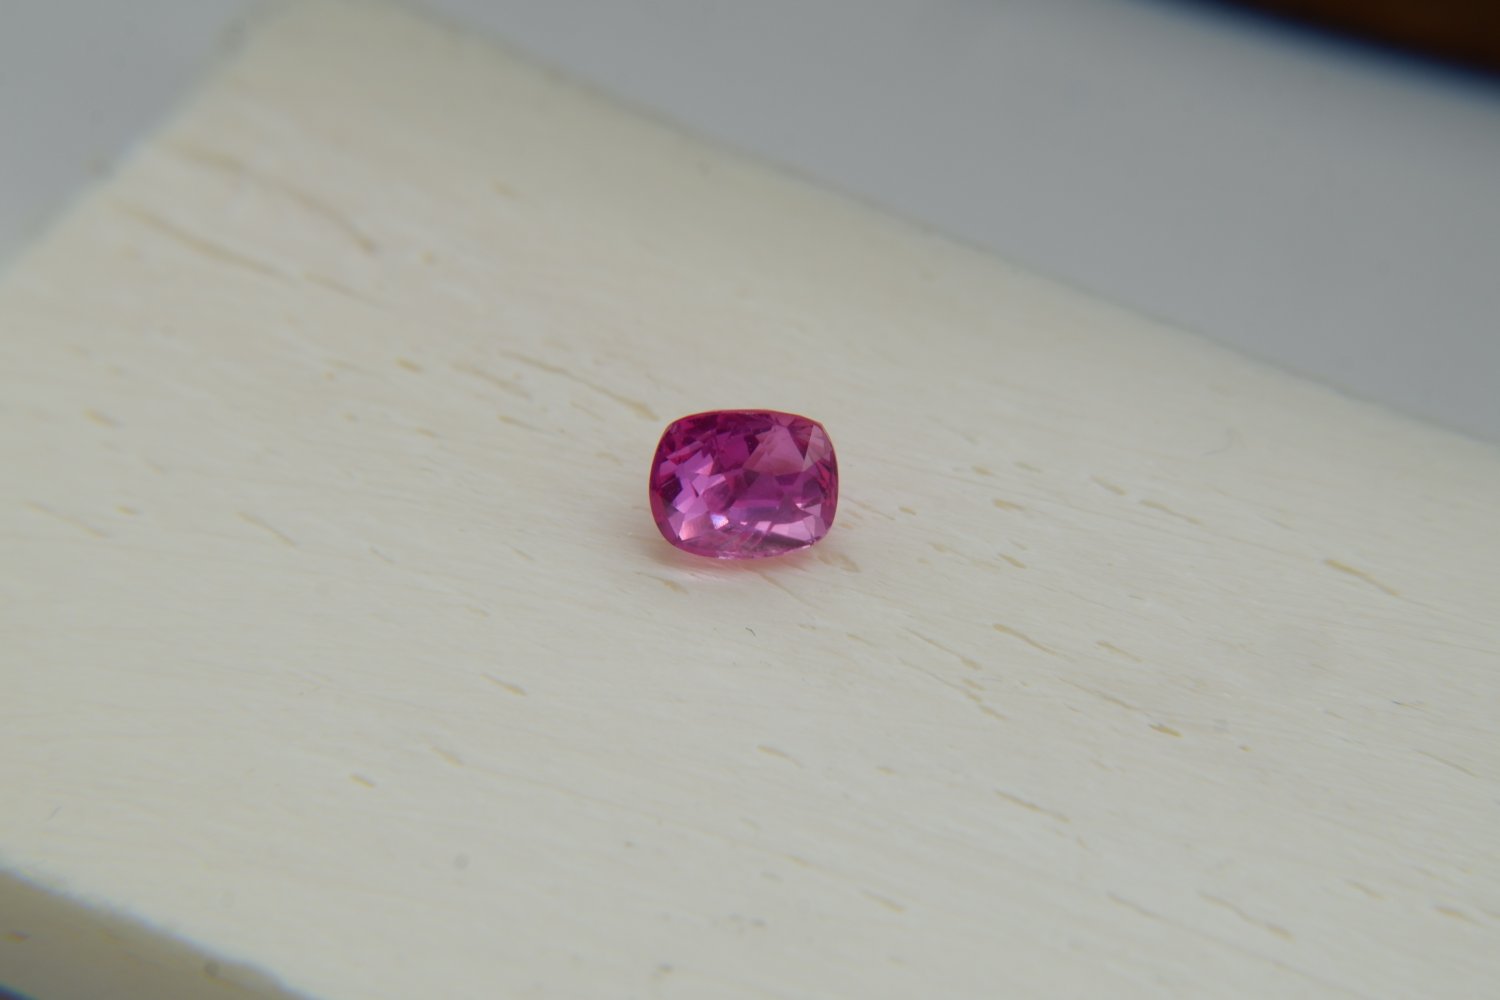  APPRAISED PREMIUM: Neon orangish-Pink Sapphire premium handcrafted designer cut, brilliance rectang